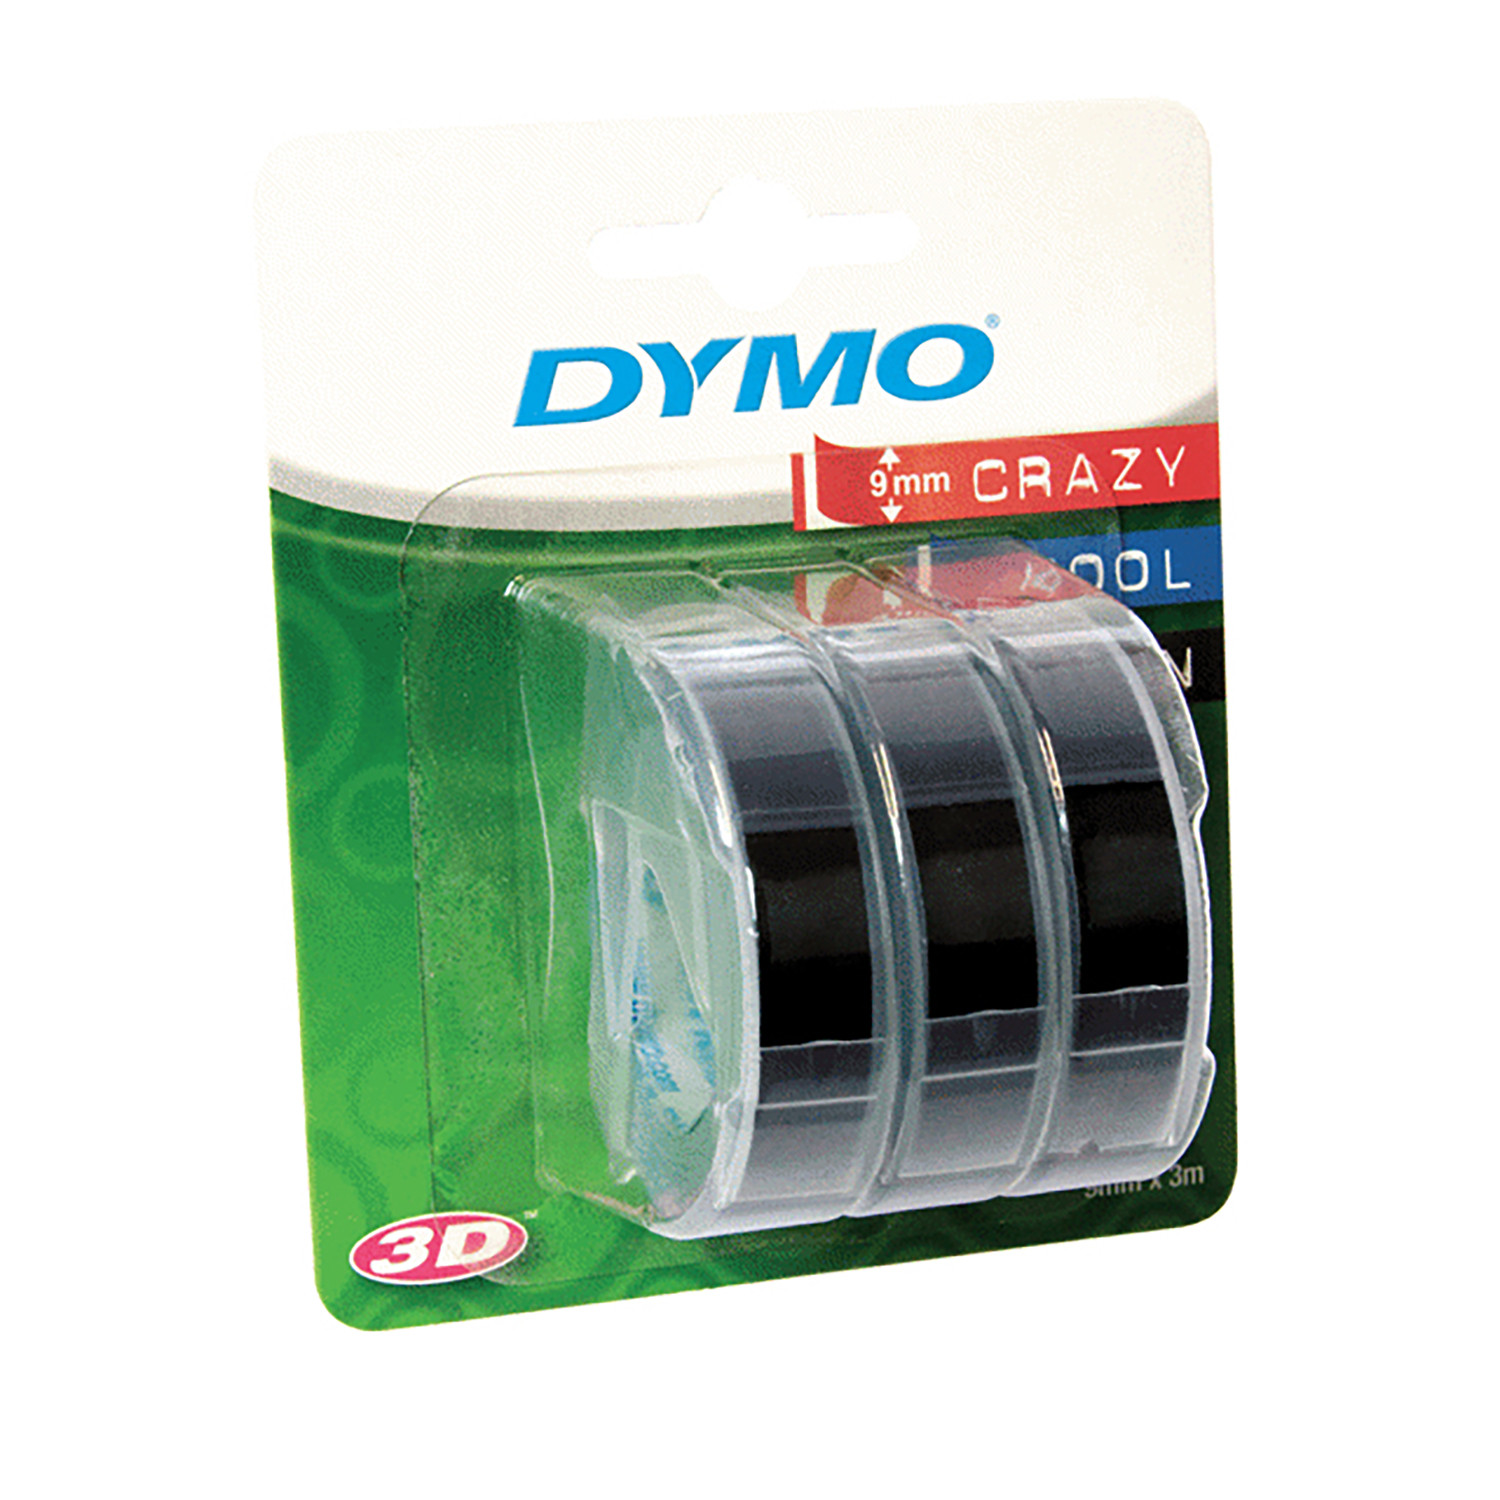 3 Pack of Dymo Omega Tape Image